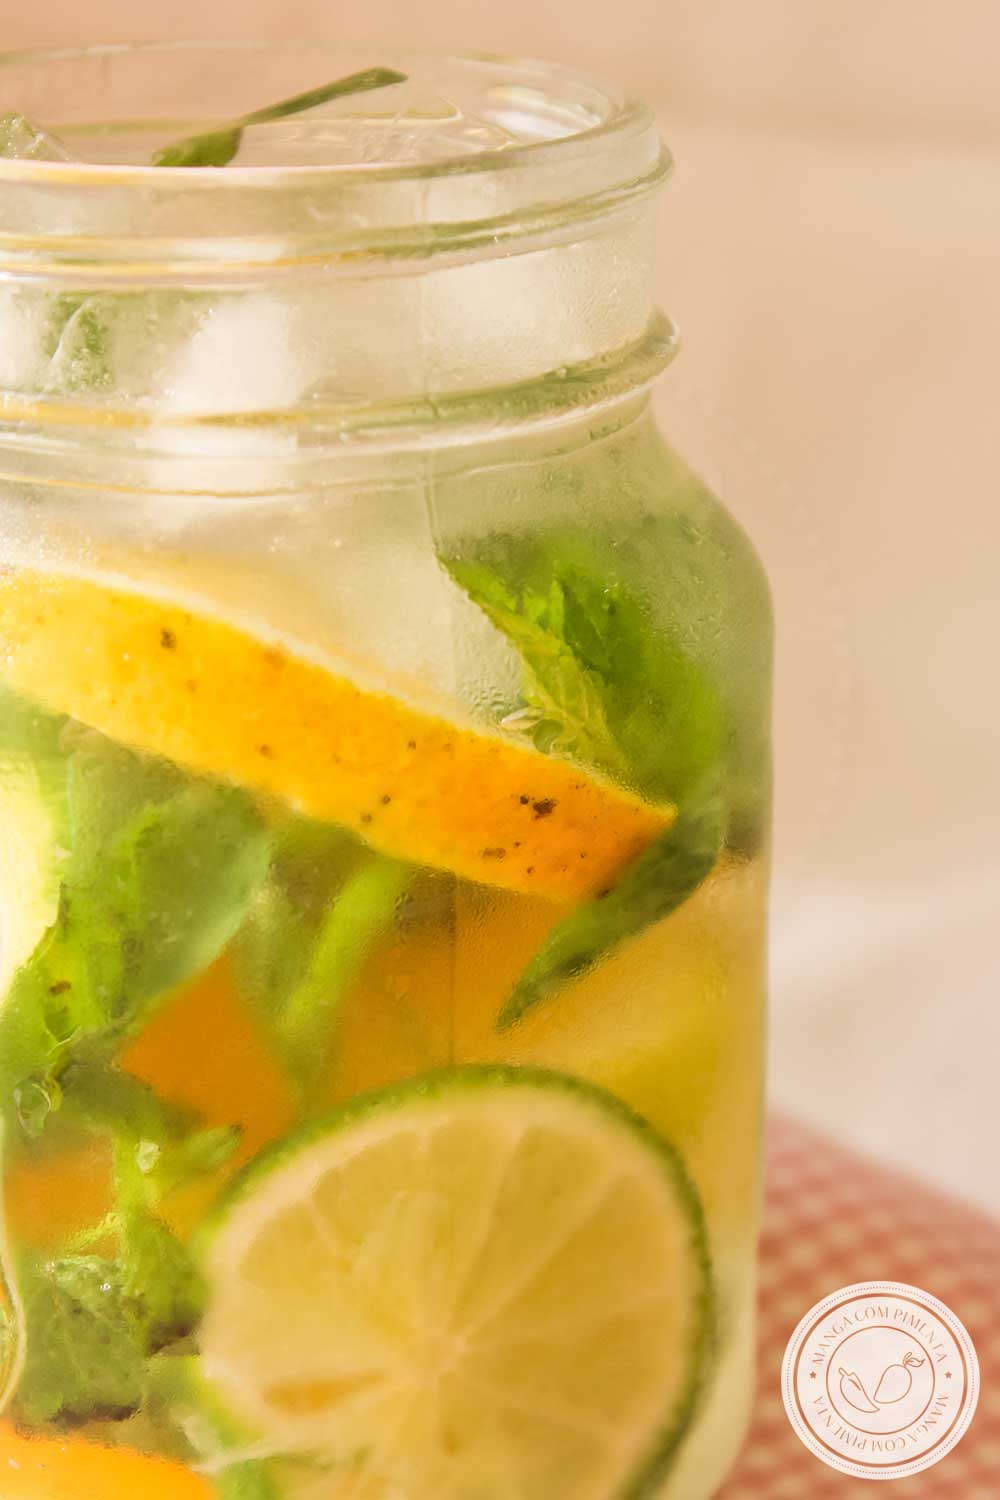 Receita de Água Saborizada de Laranja com Limão e Hortelã - uma bebida refrescante para curtir o verão!